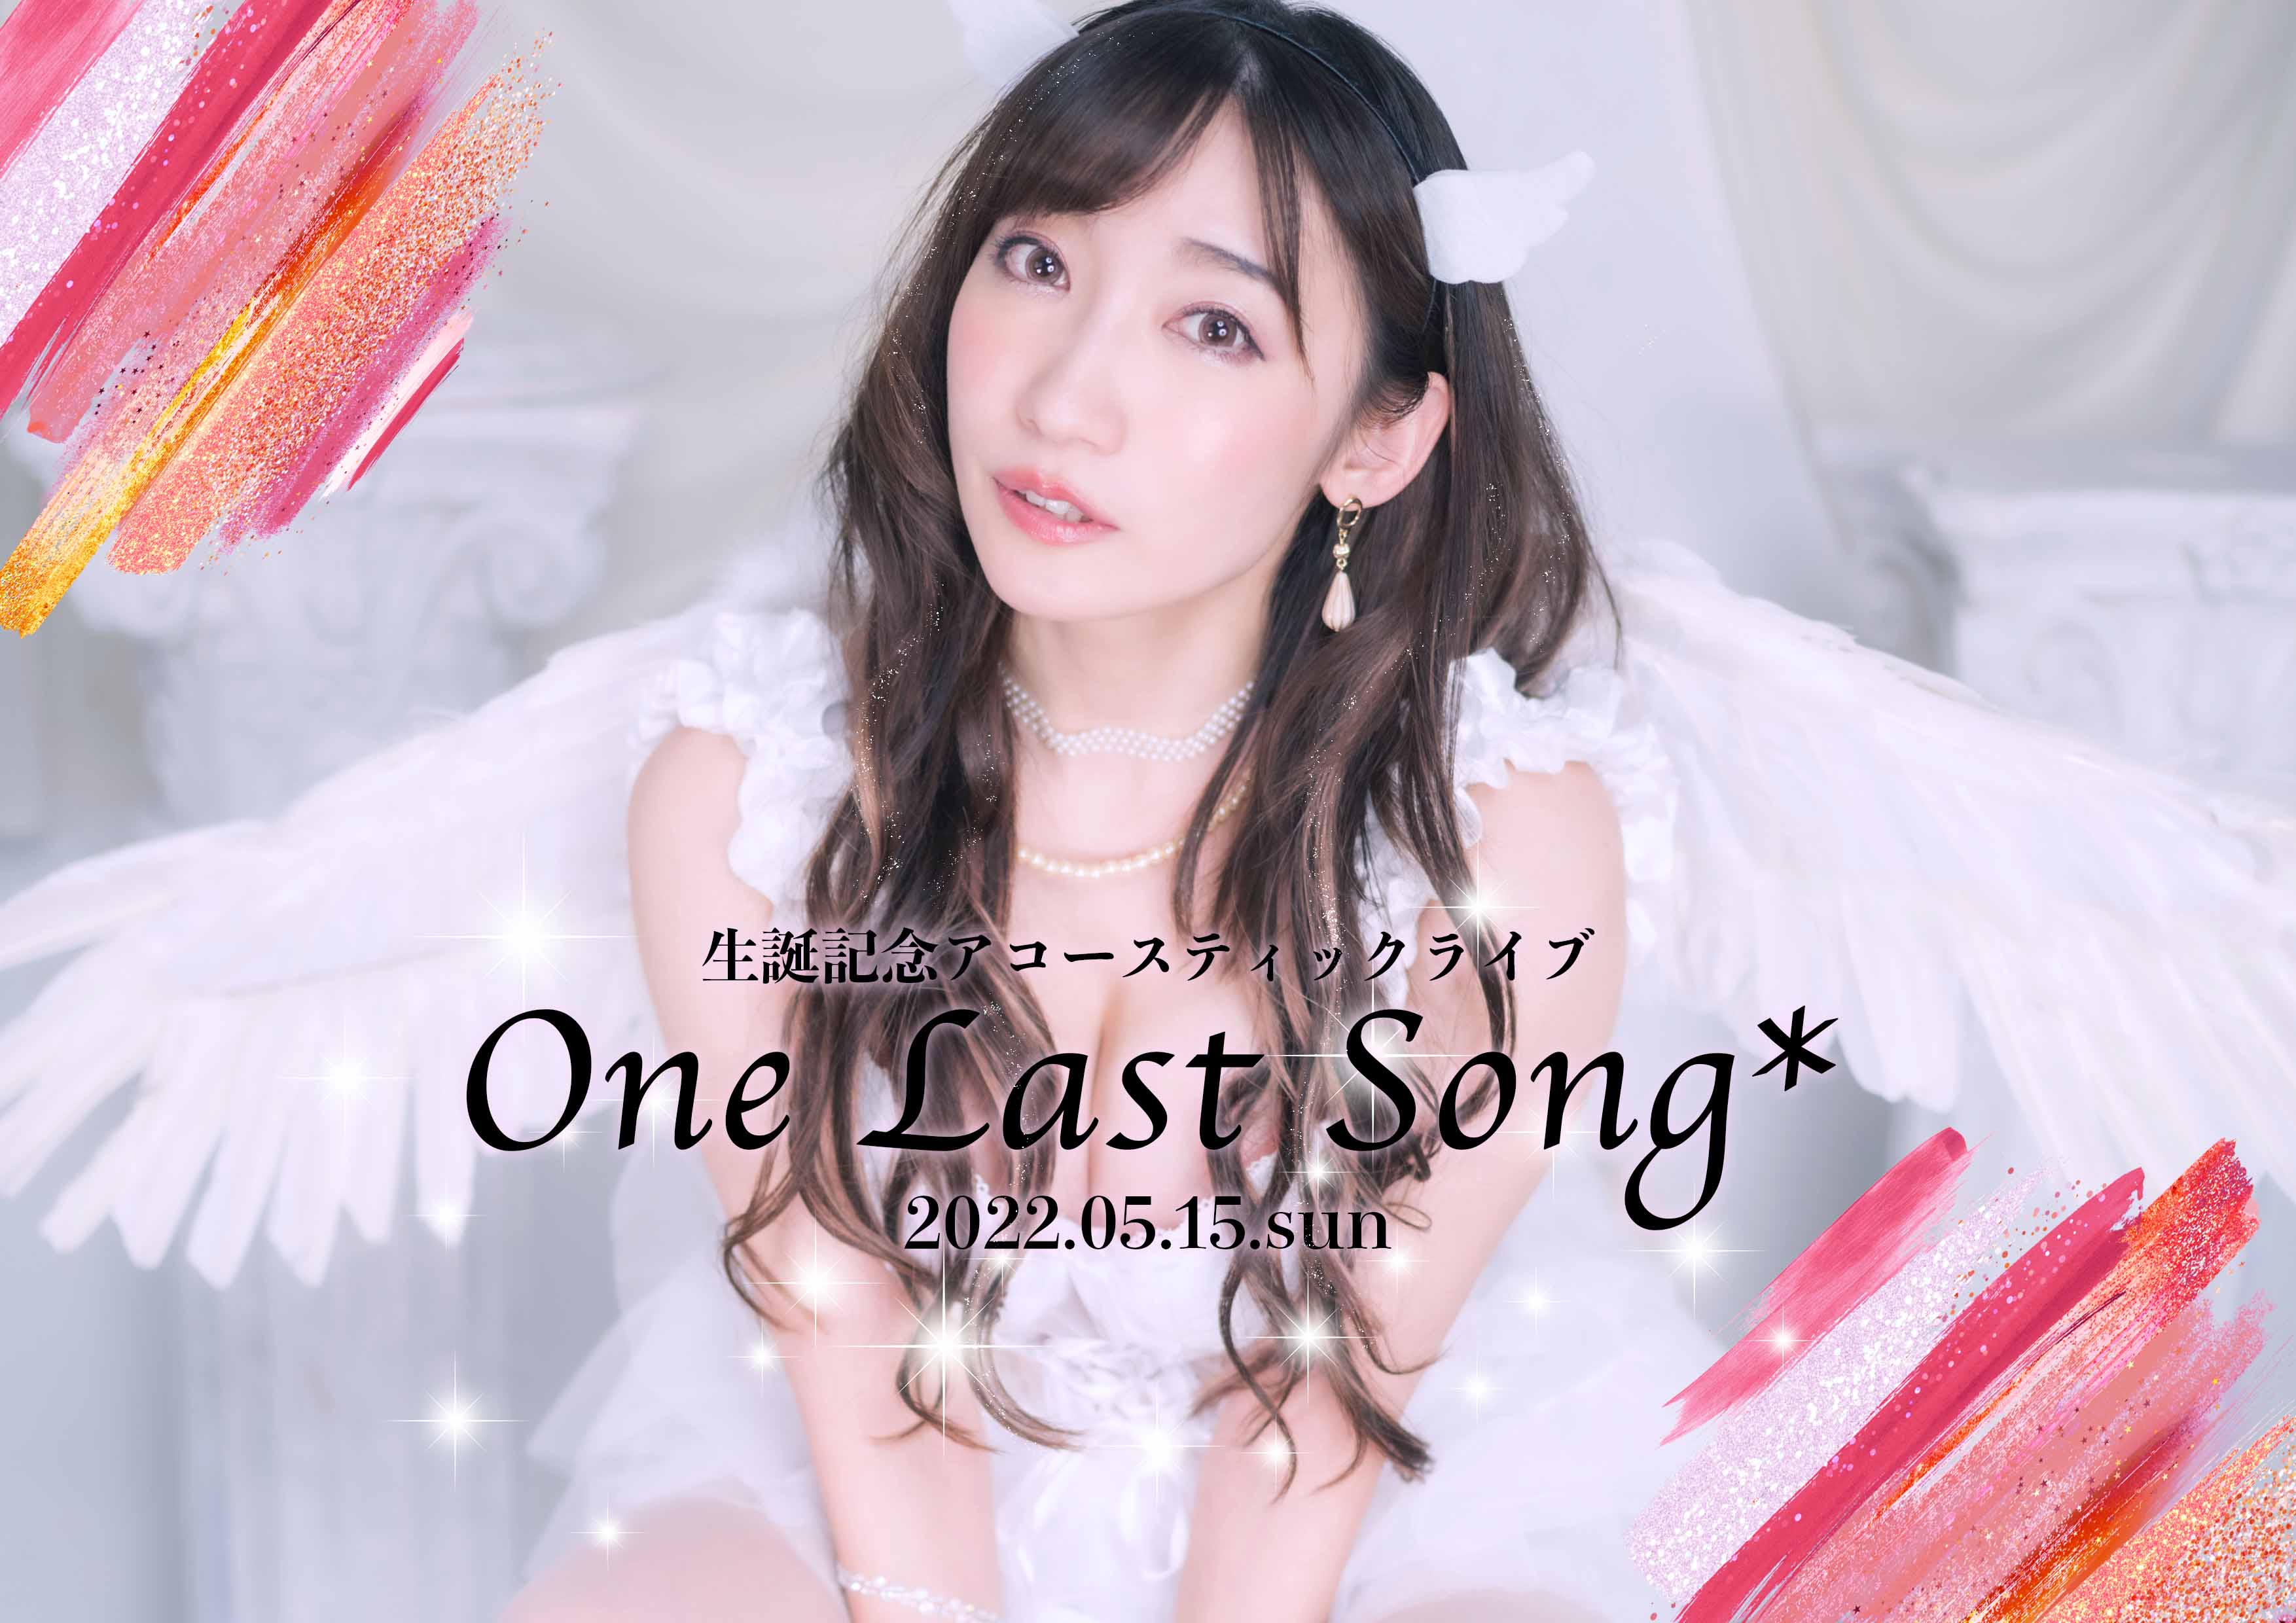 生誕記念アコースティックライブ『One Last Song*』